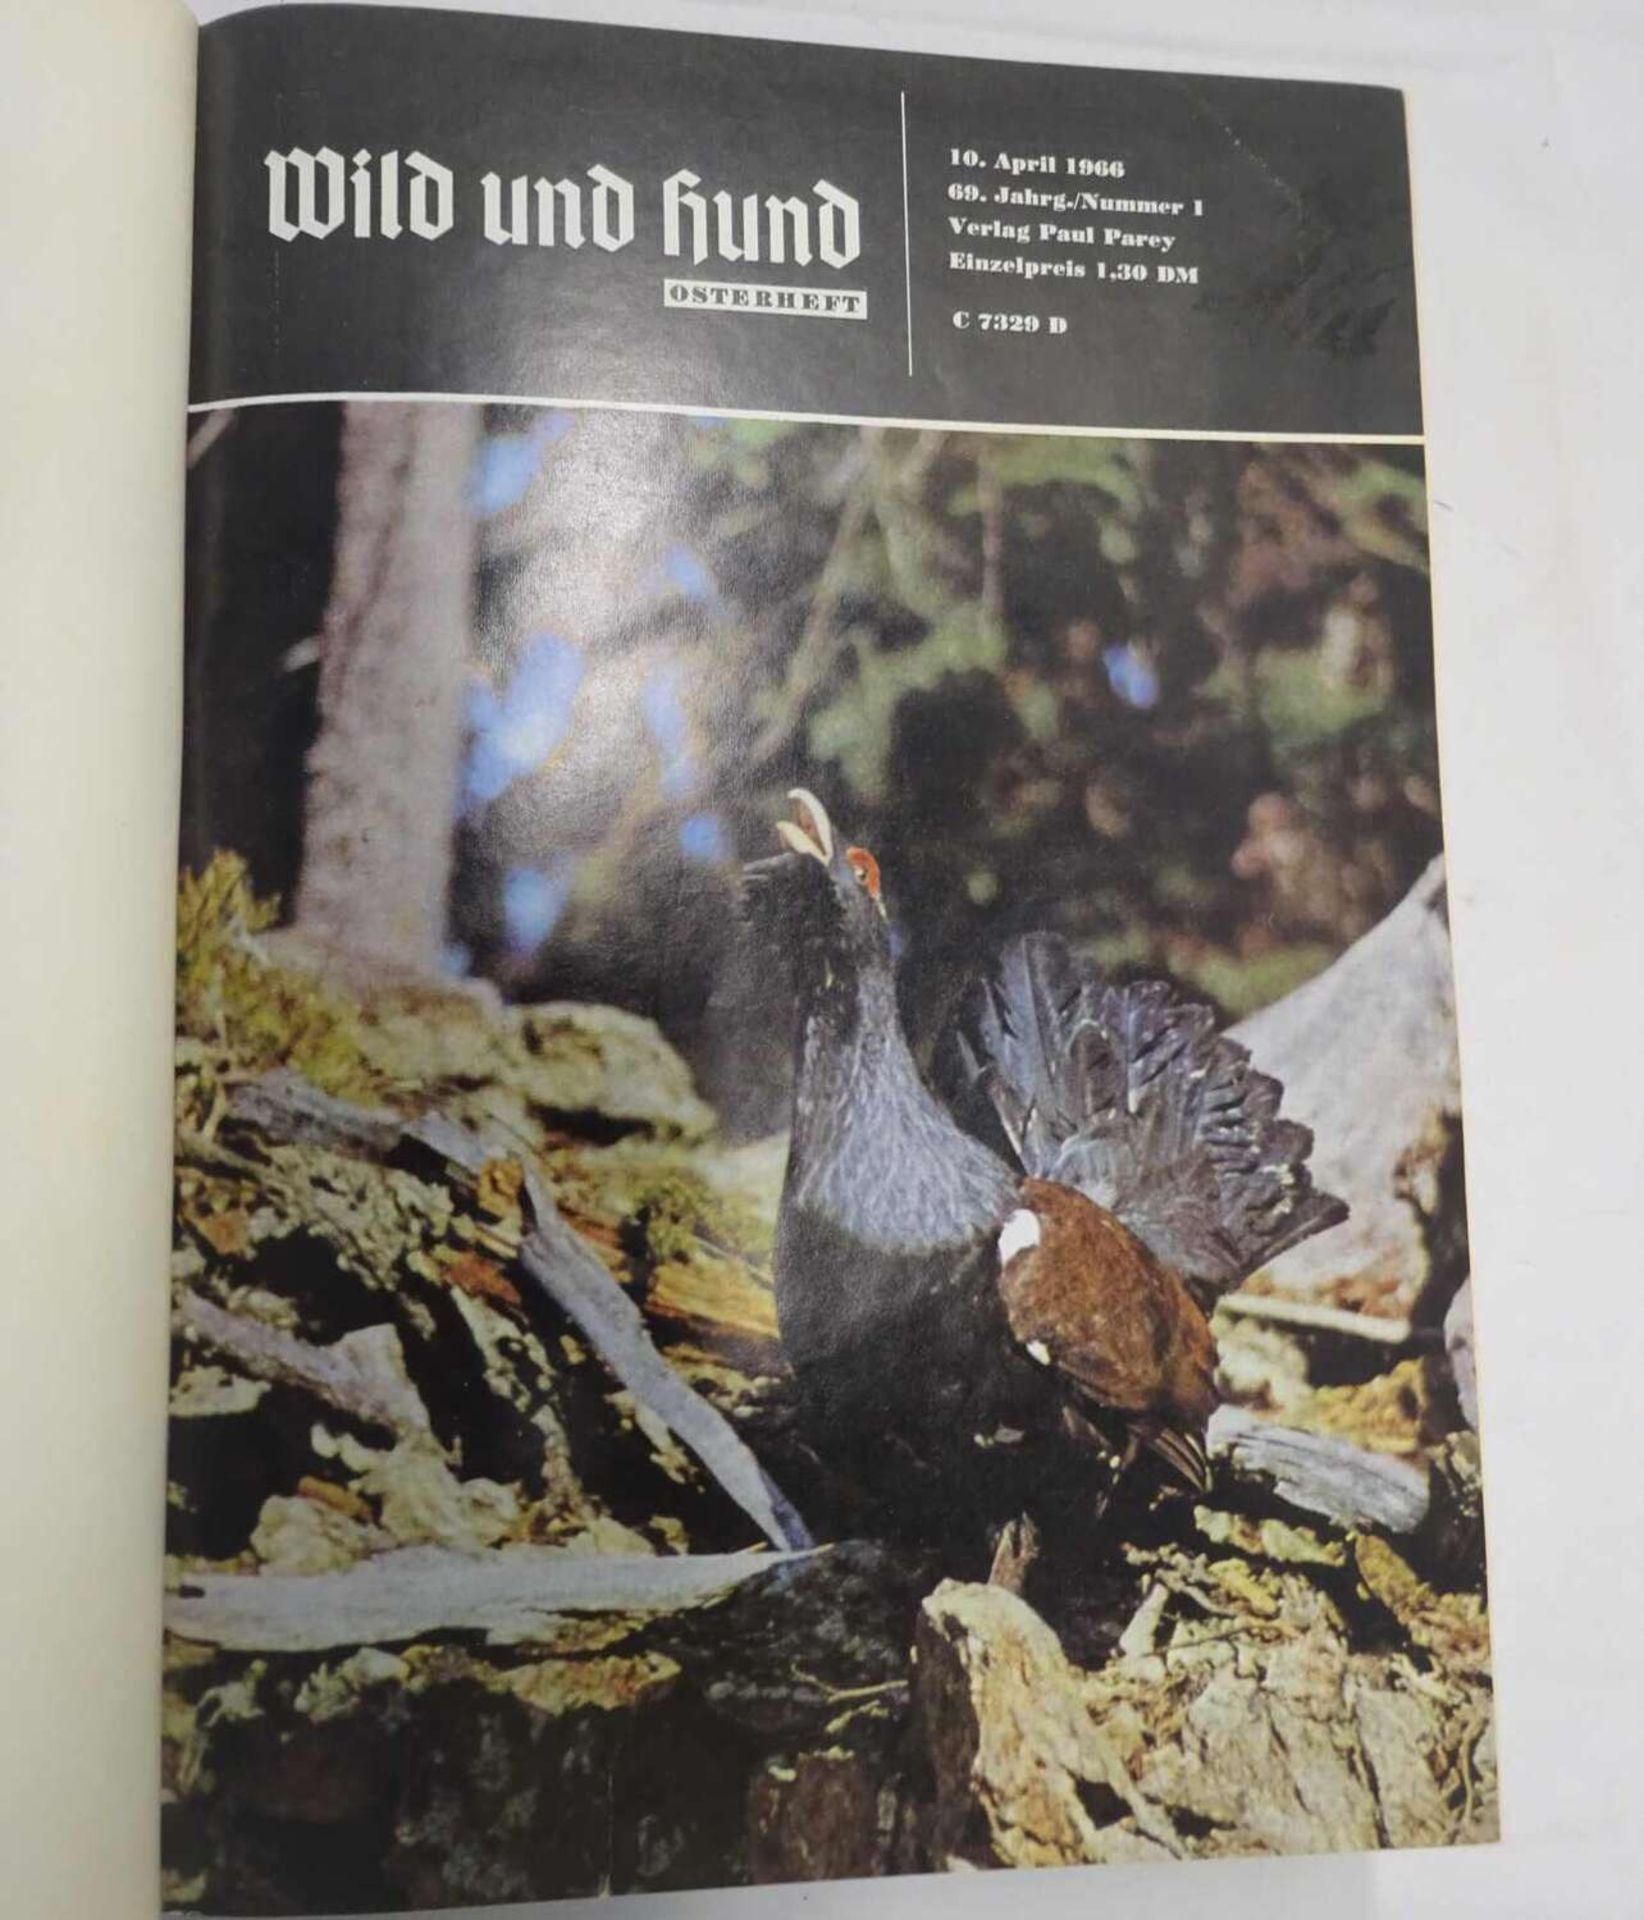 Paul Parey "Wild und Hund", 69. Jahrgang, 1966/67. Gebunden. Guter Zustand.Paul Parey "Wild and Dog